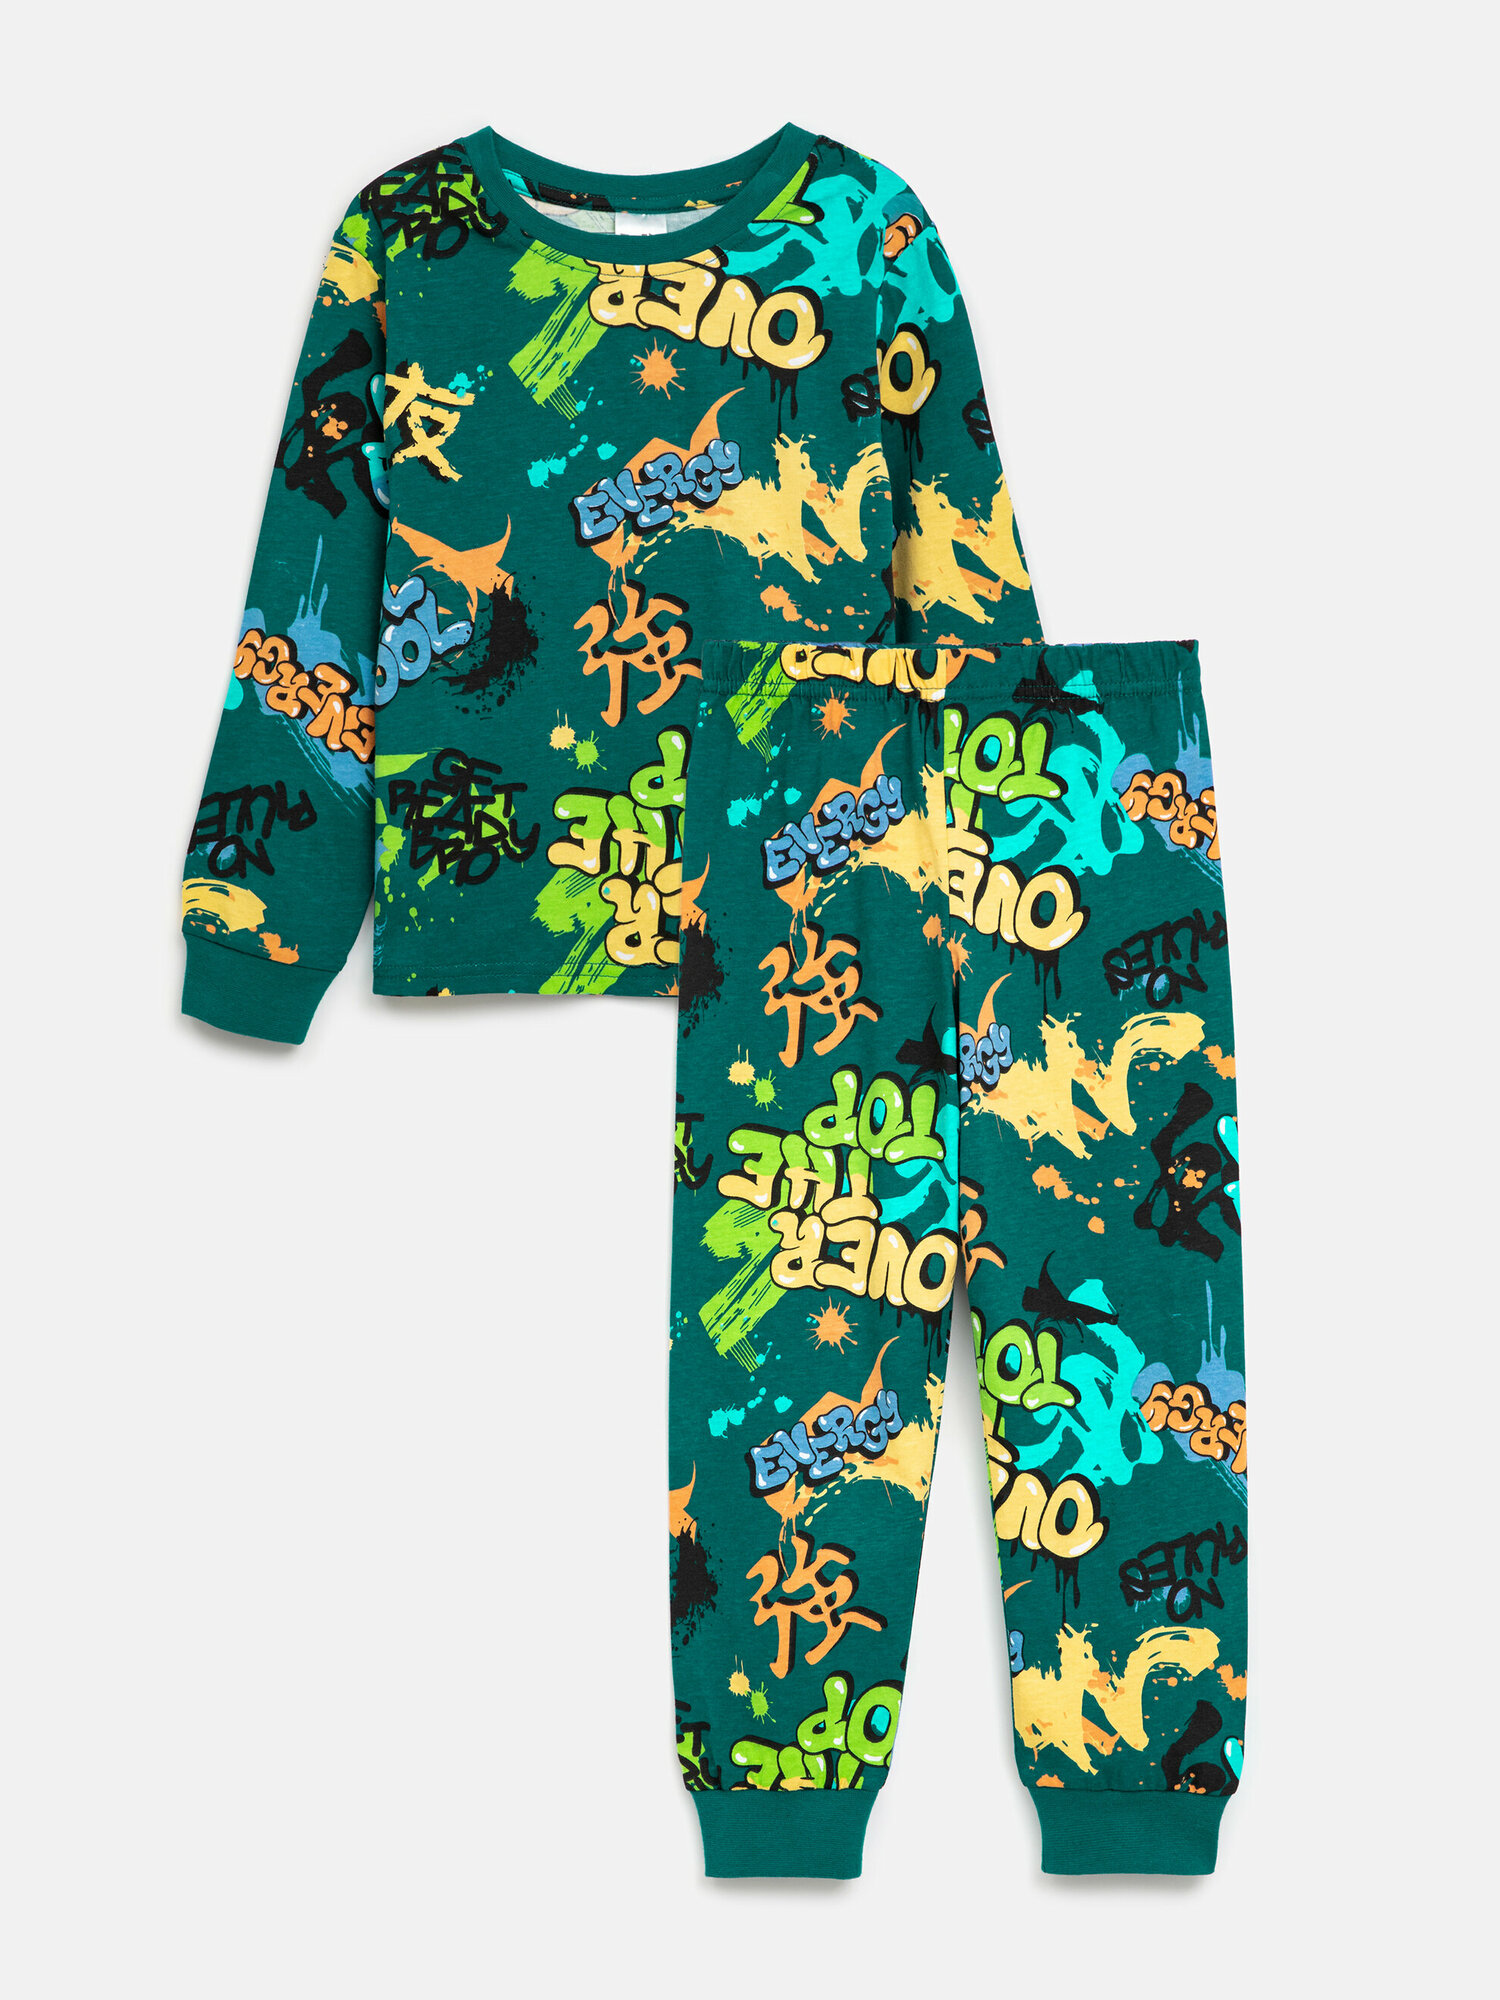 Пижама Acoola, размер 110/116, зеленый